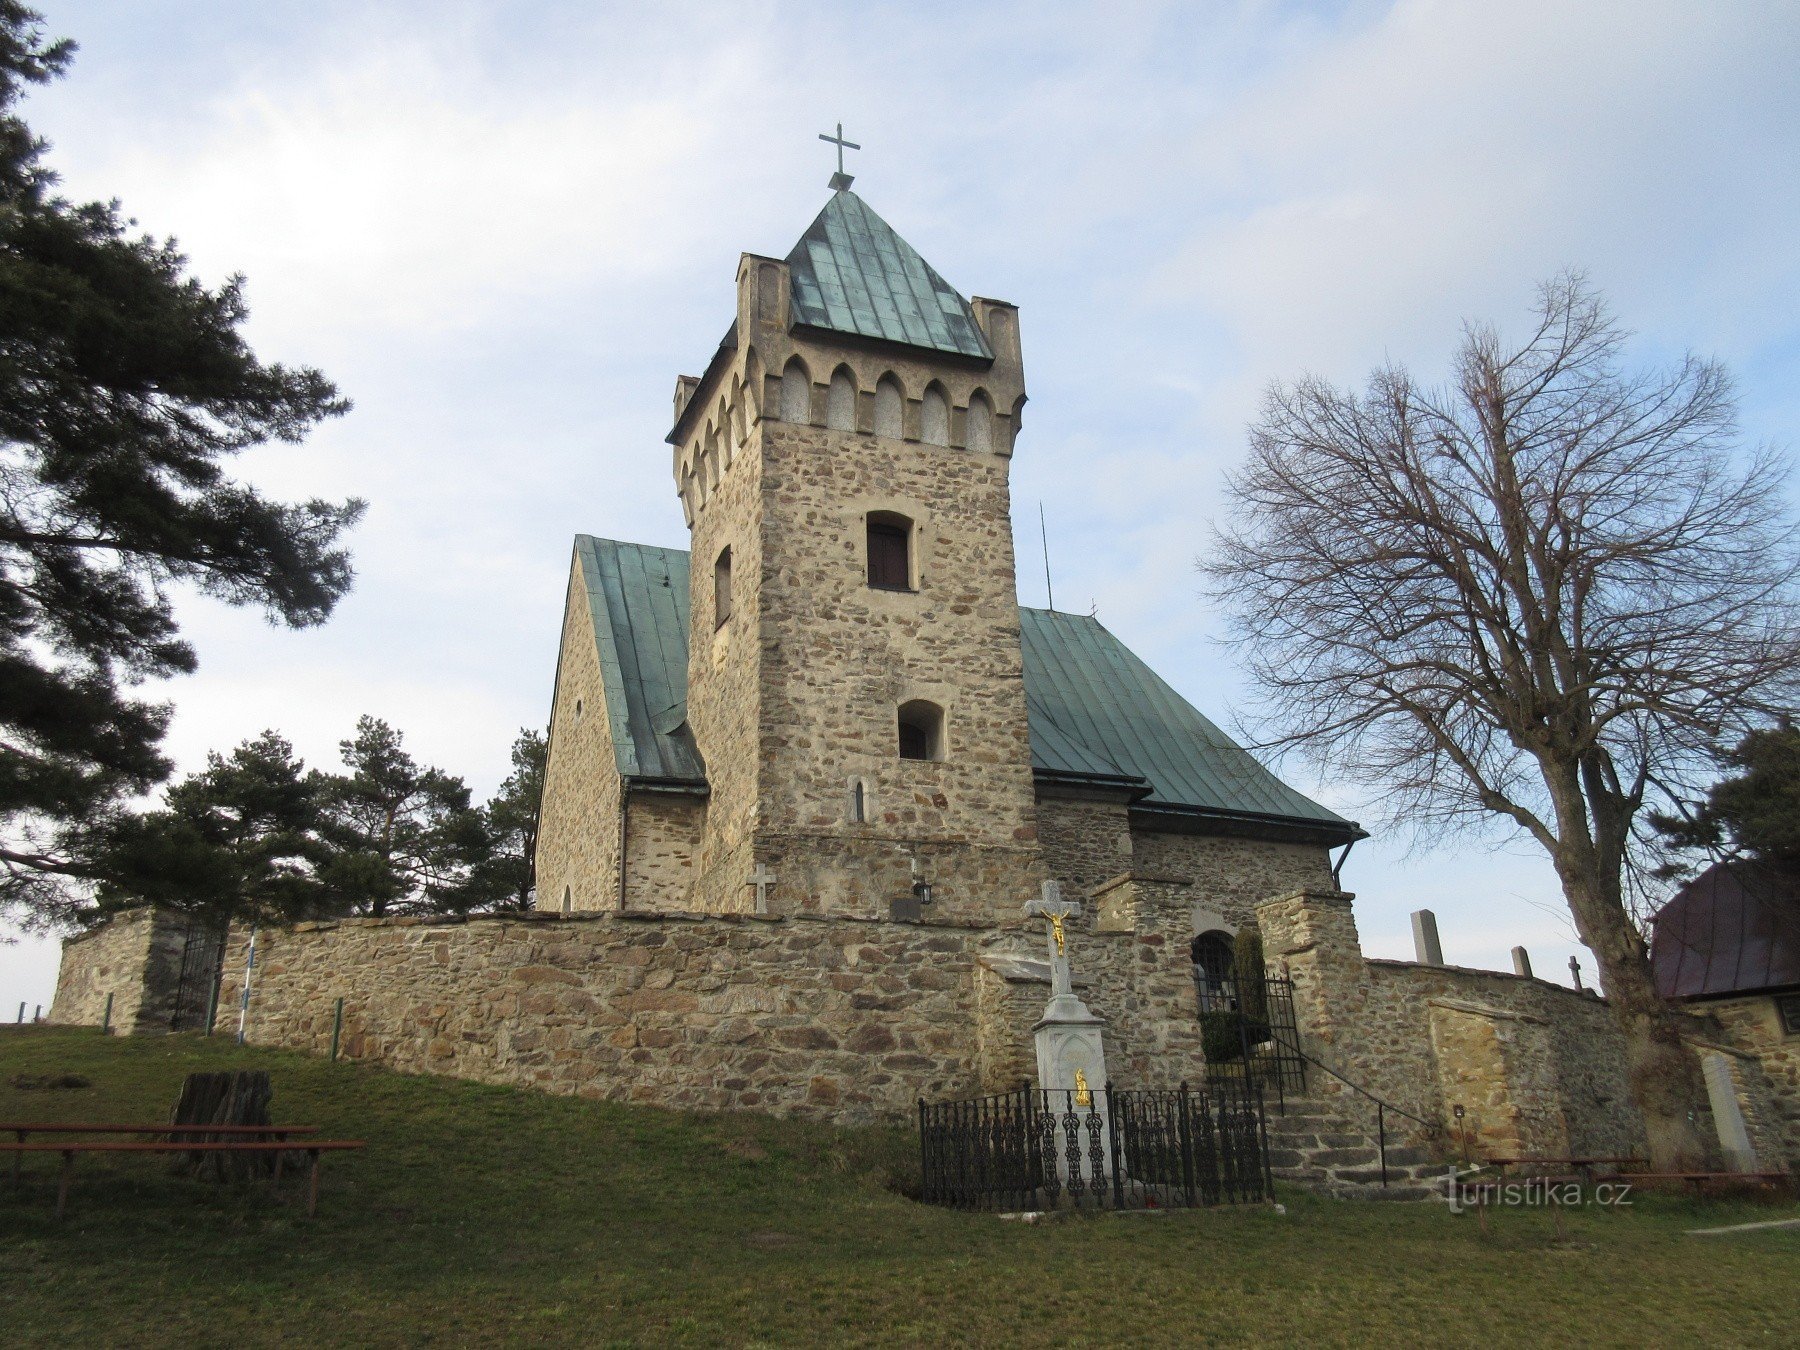 Vítochov – church and Munzar's pine